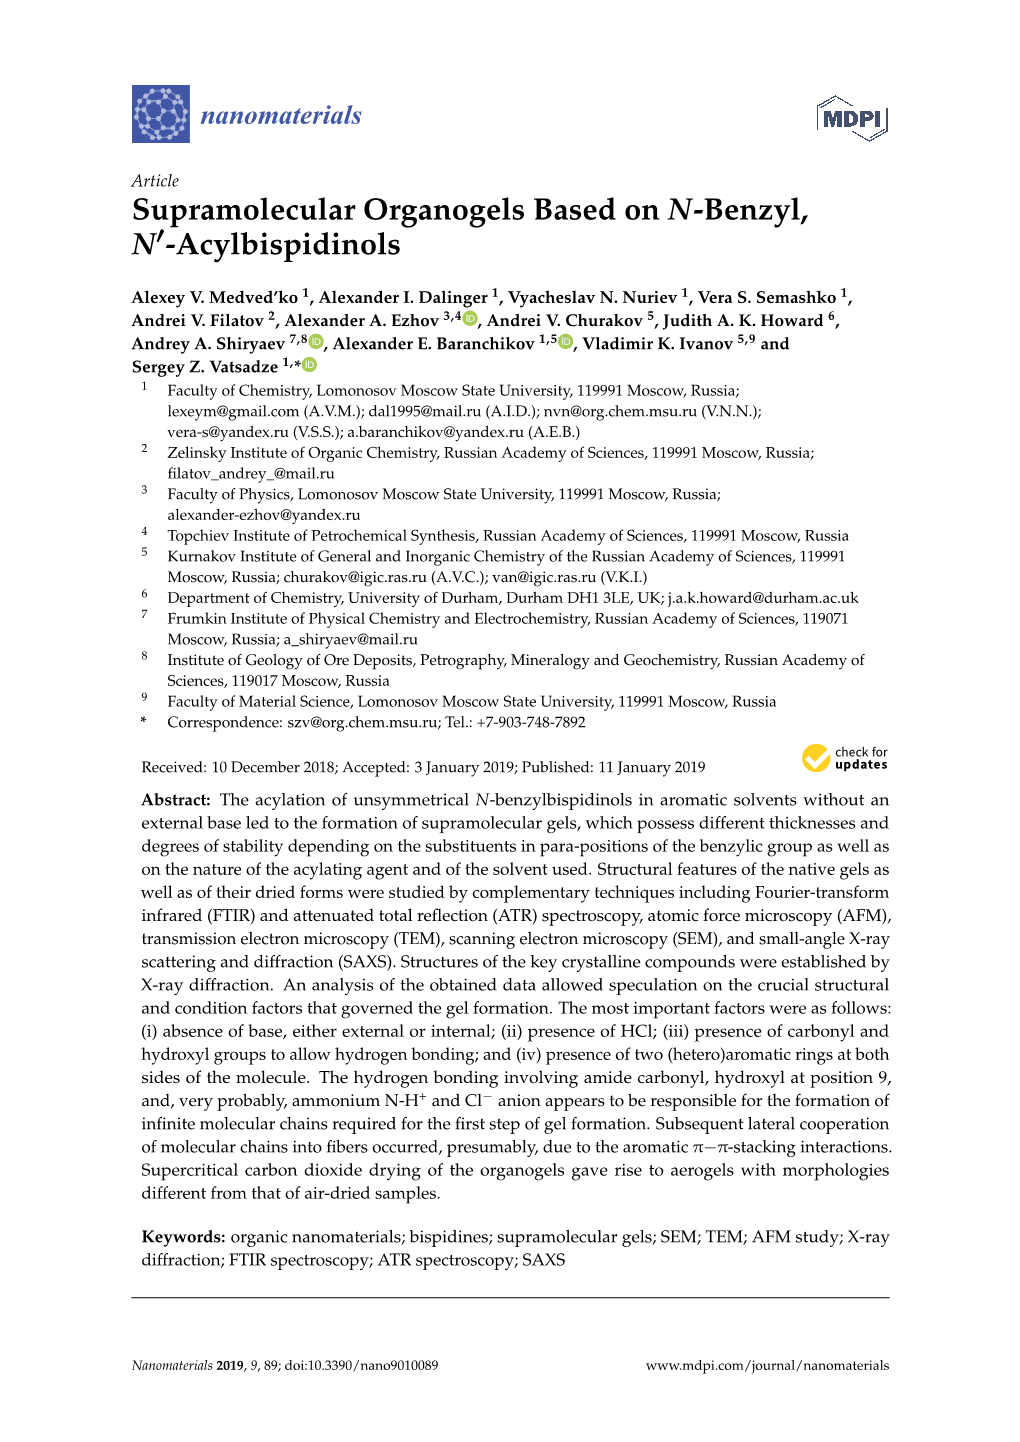 Supramolecular Organogels Based on N-Benzyl, N'-Acylbispidinols